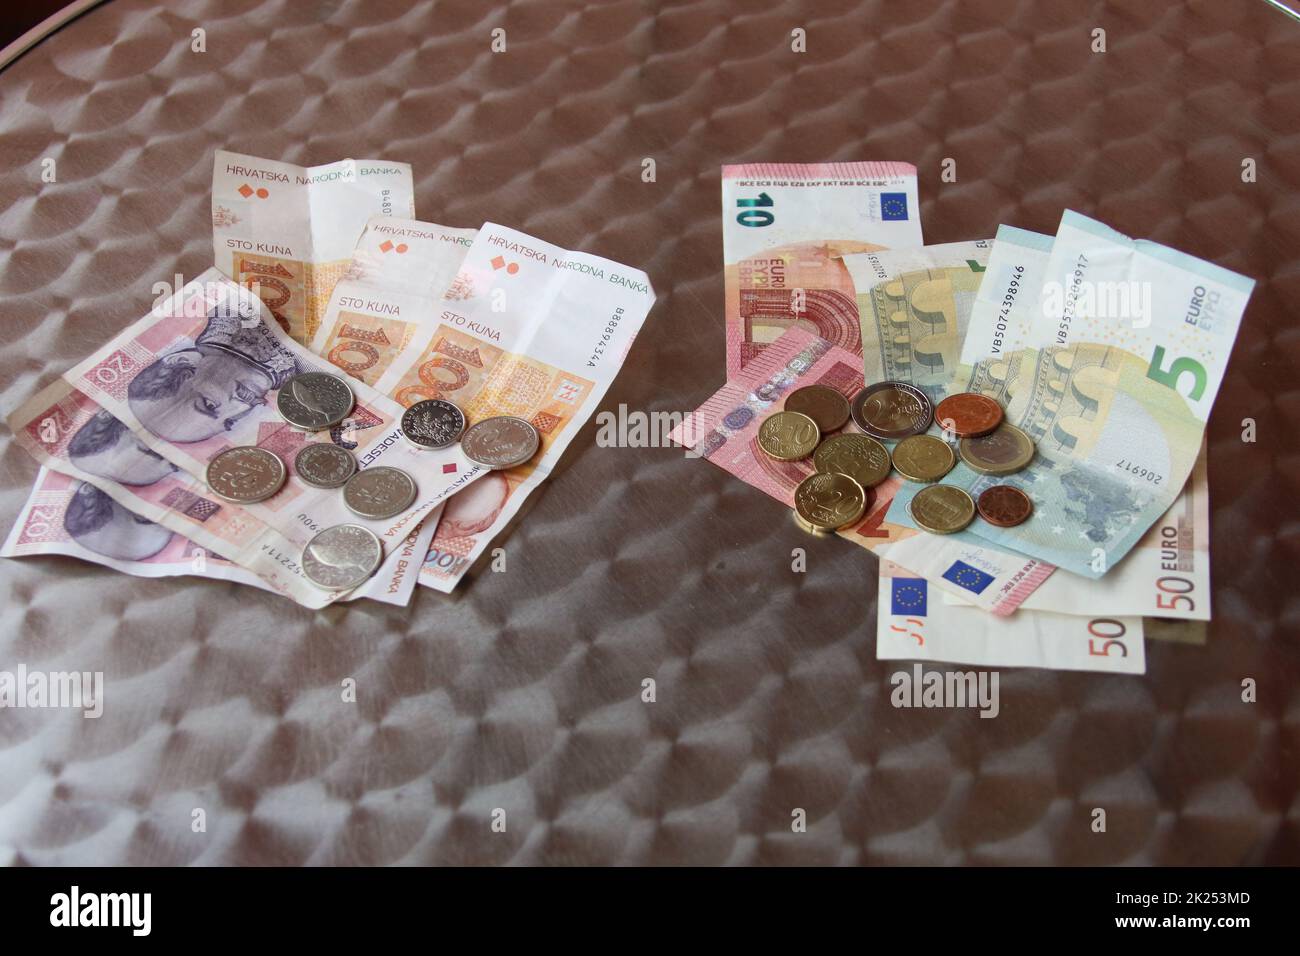 Zum 1. Januar 2023 darf Kroatien /Croatia den Euro als offizielle Währung einführen, der dann die Kuna als Landeswährung ablösen wird. Stock Photo